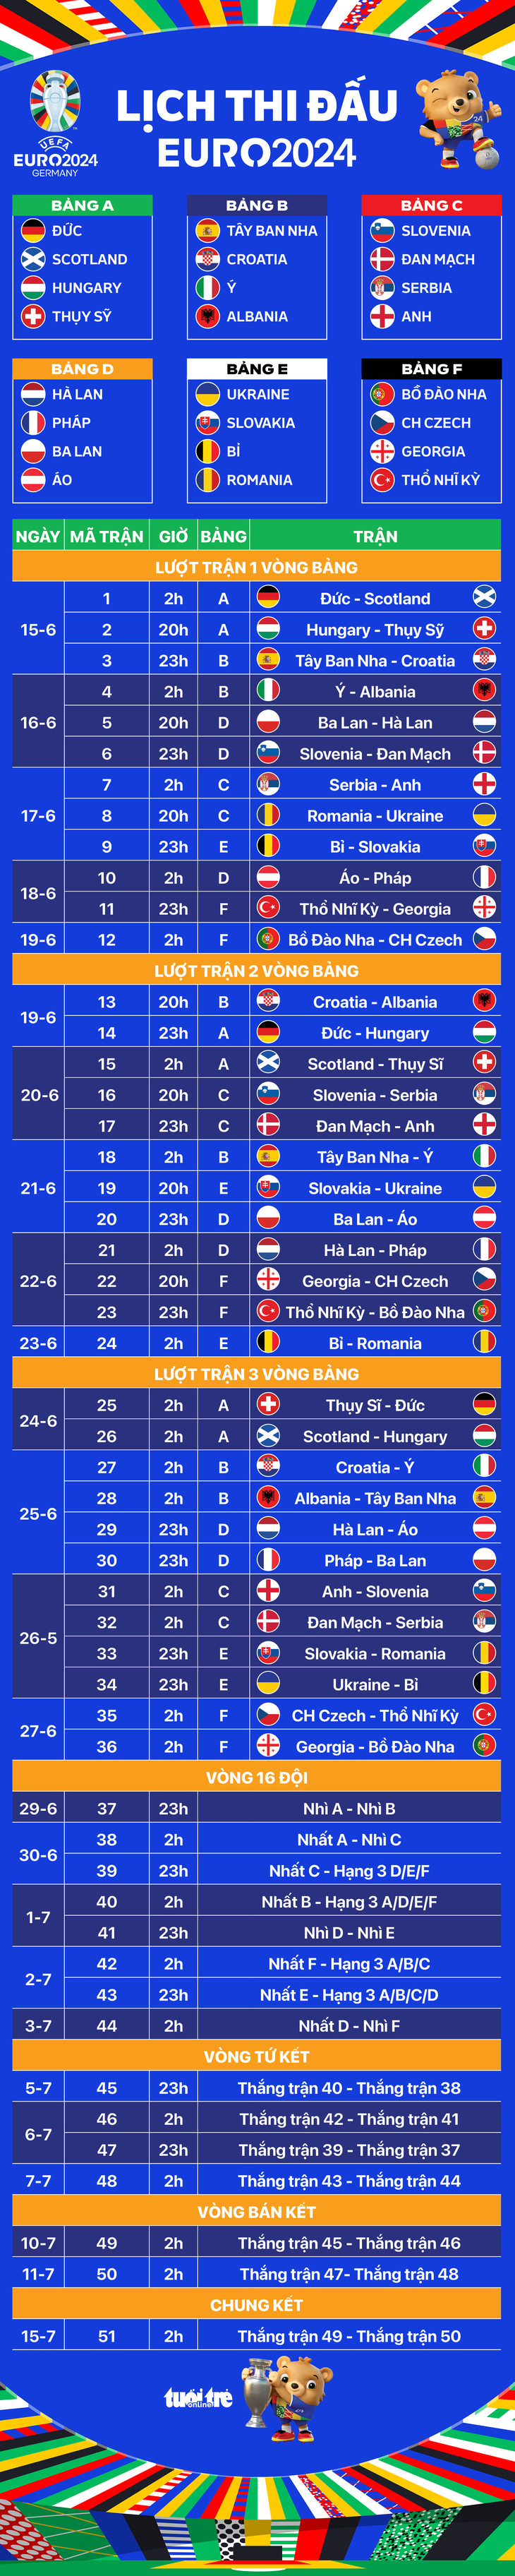 Lịch thi đấu toàn bộ 51 trận ở Euro 2024